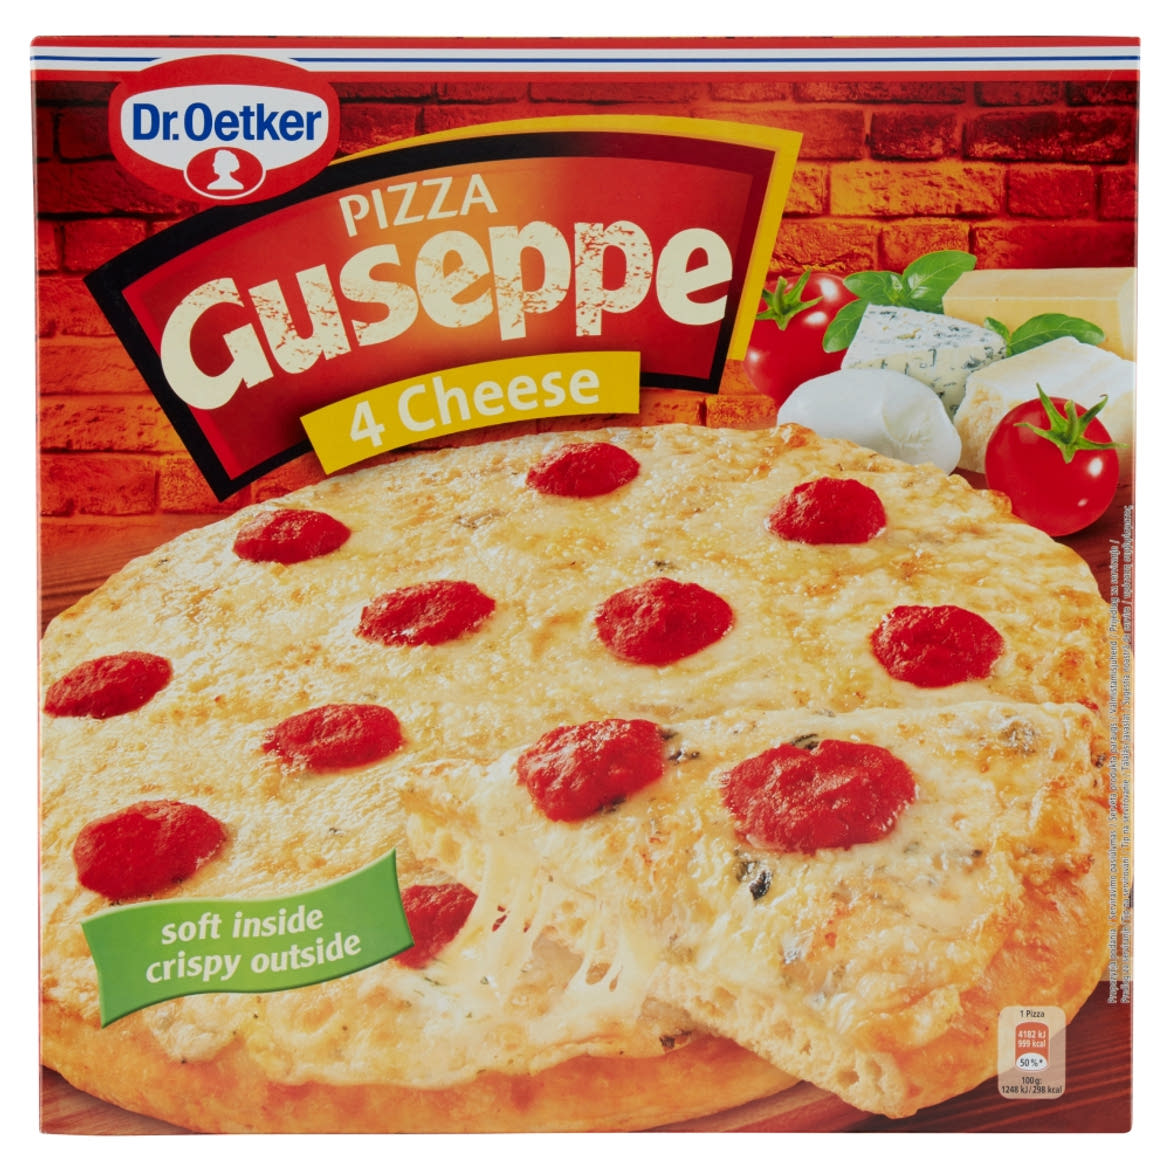 Dr. Oetker Guseppe gyorsfagyasztott 4 sajtos pizza